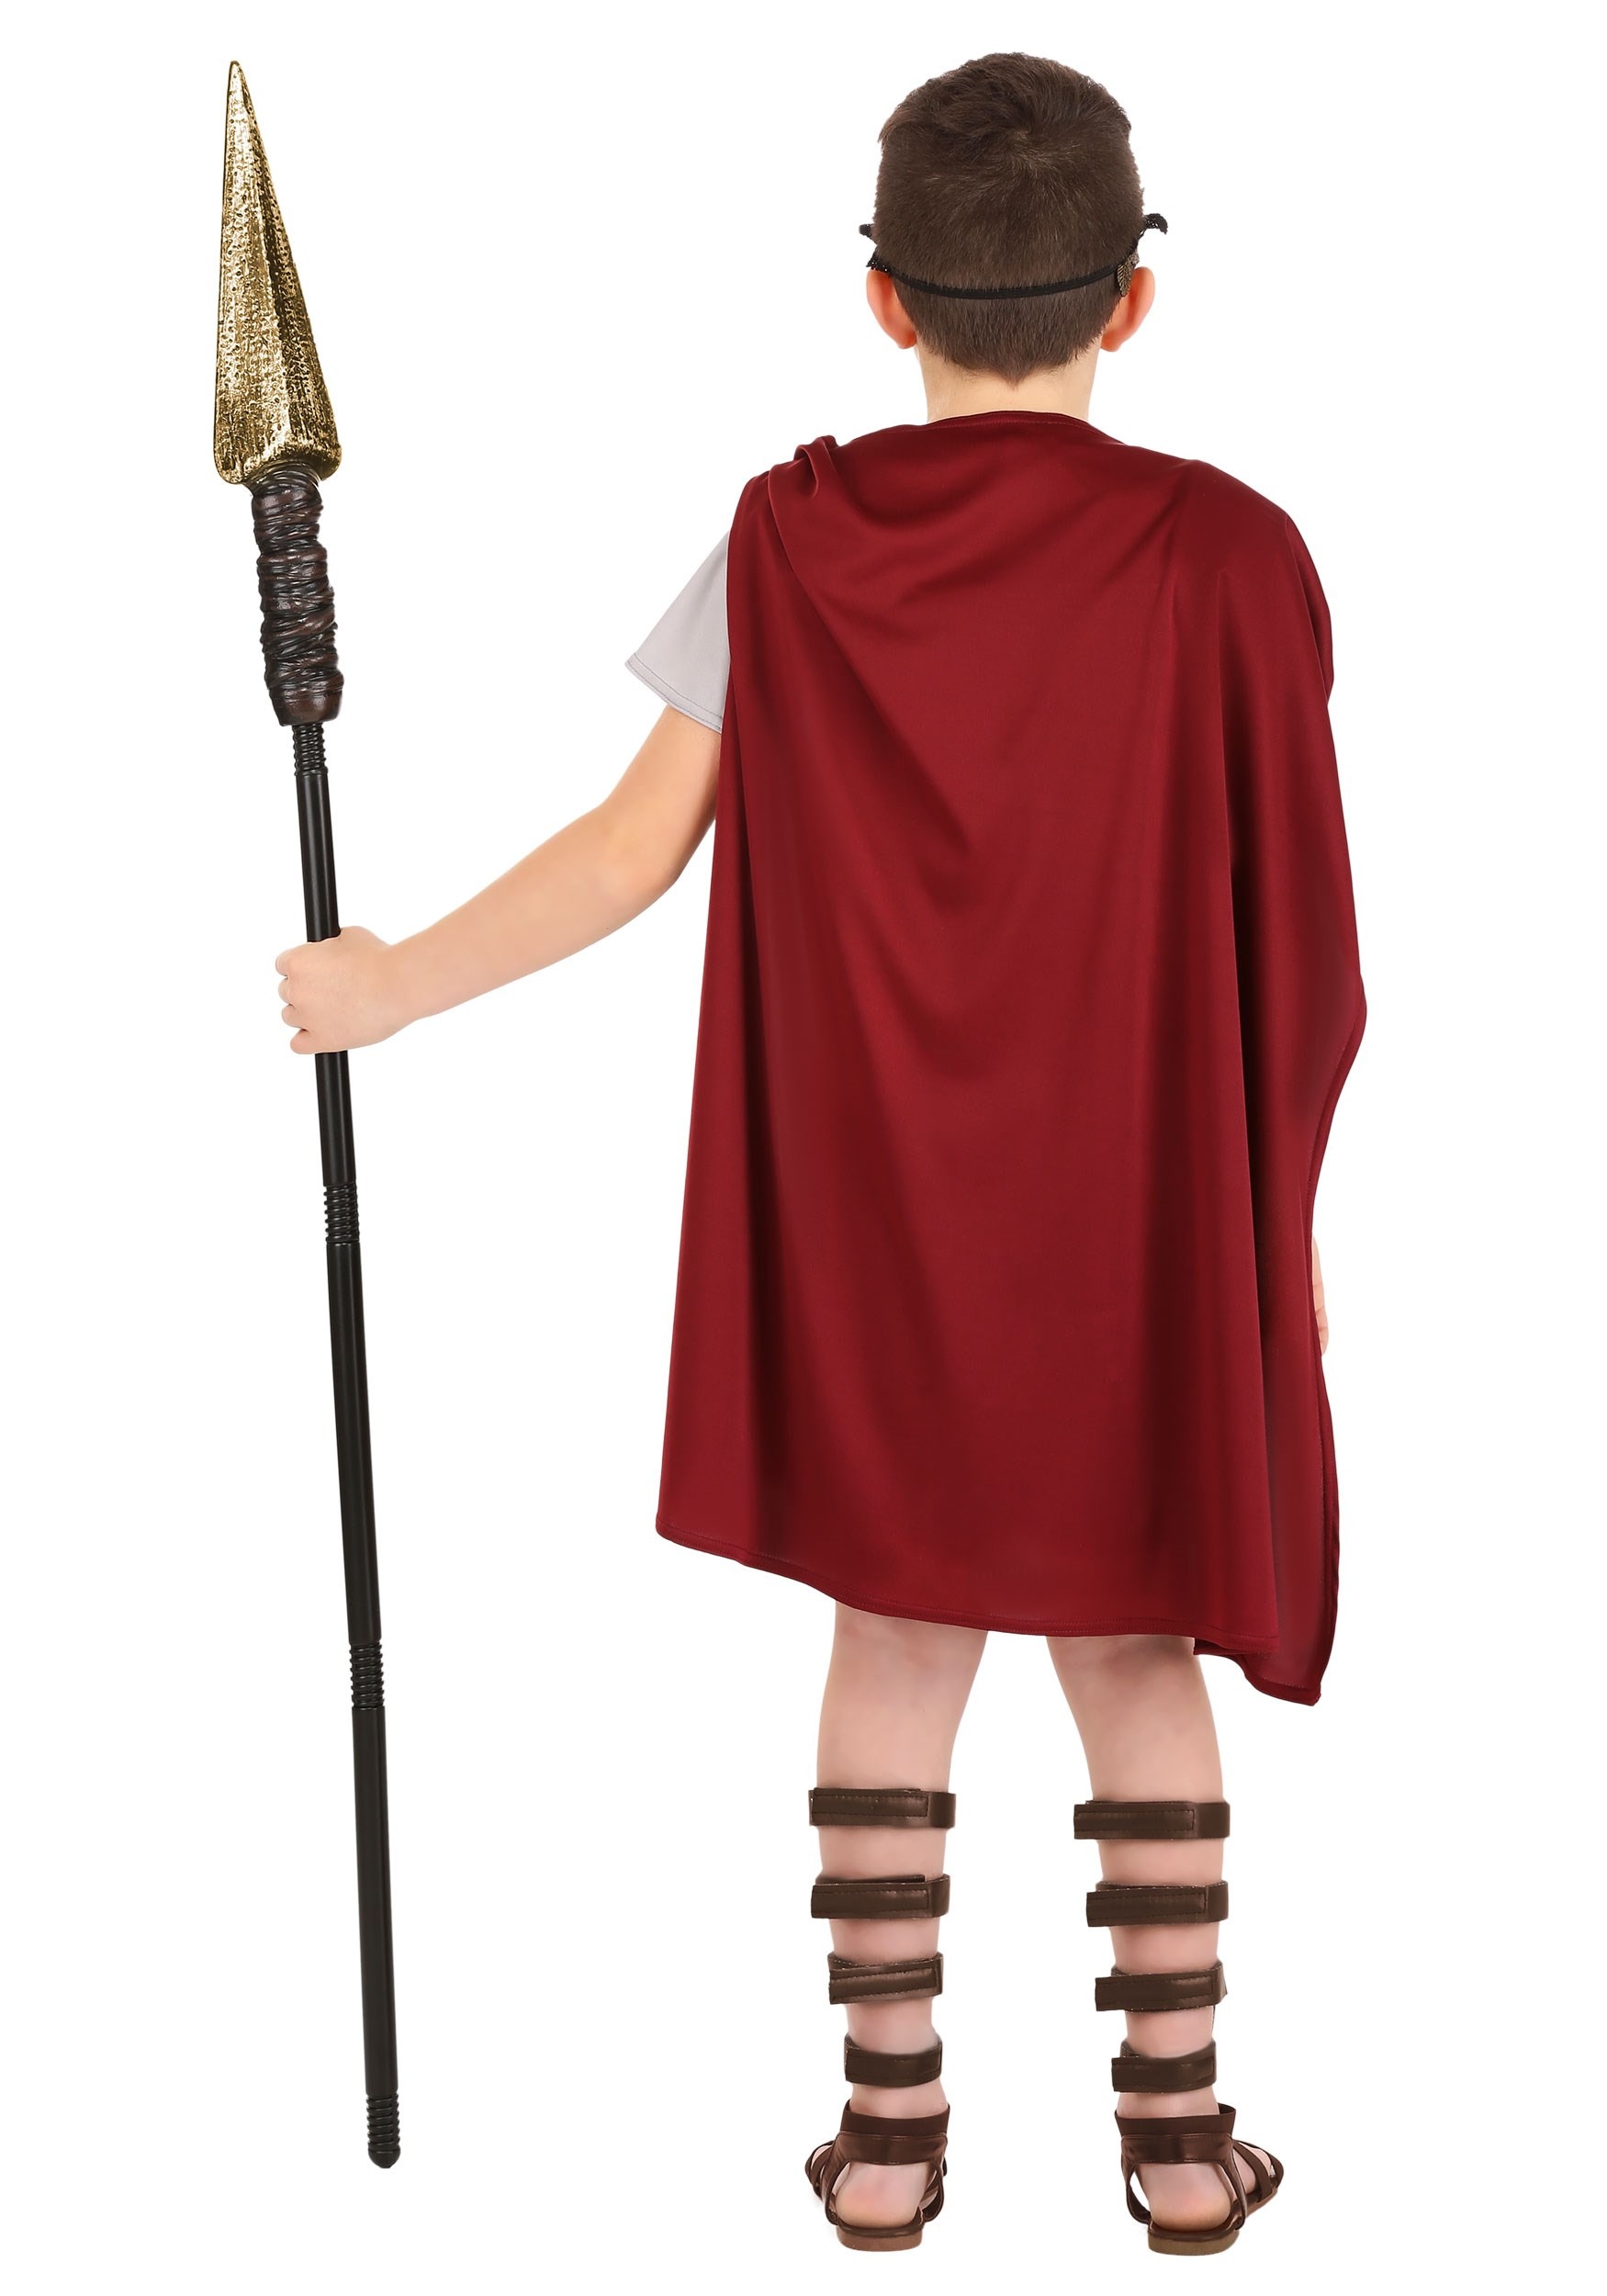 Roman Warrior Kid's Costume